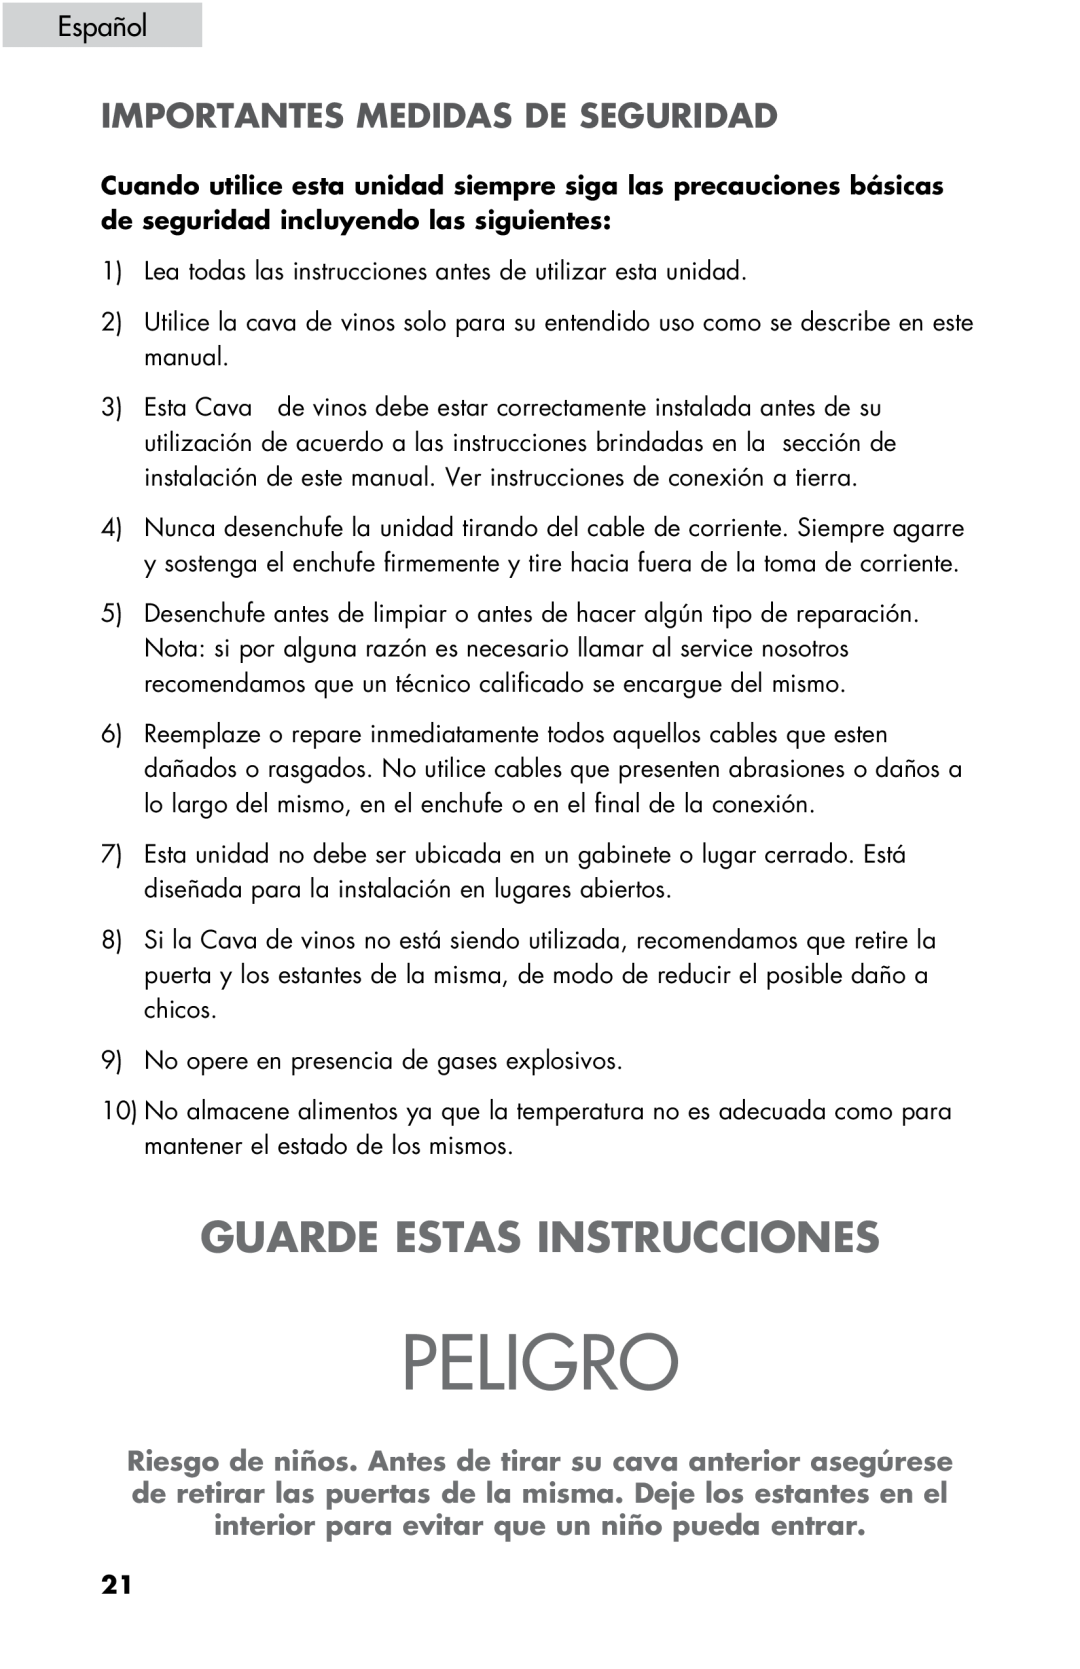 Haier ZHBCN05FVS user manual Peligro, Guarde Estas Instrucciones, Importantes Medidas De Seguridad, Español 